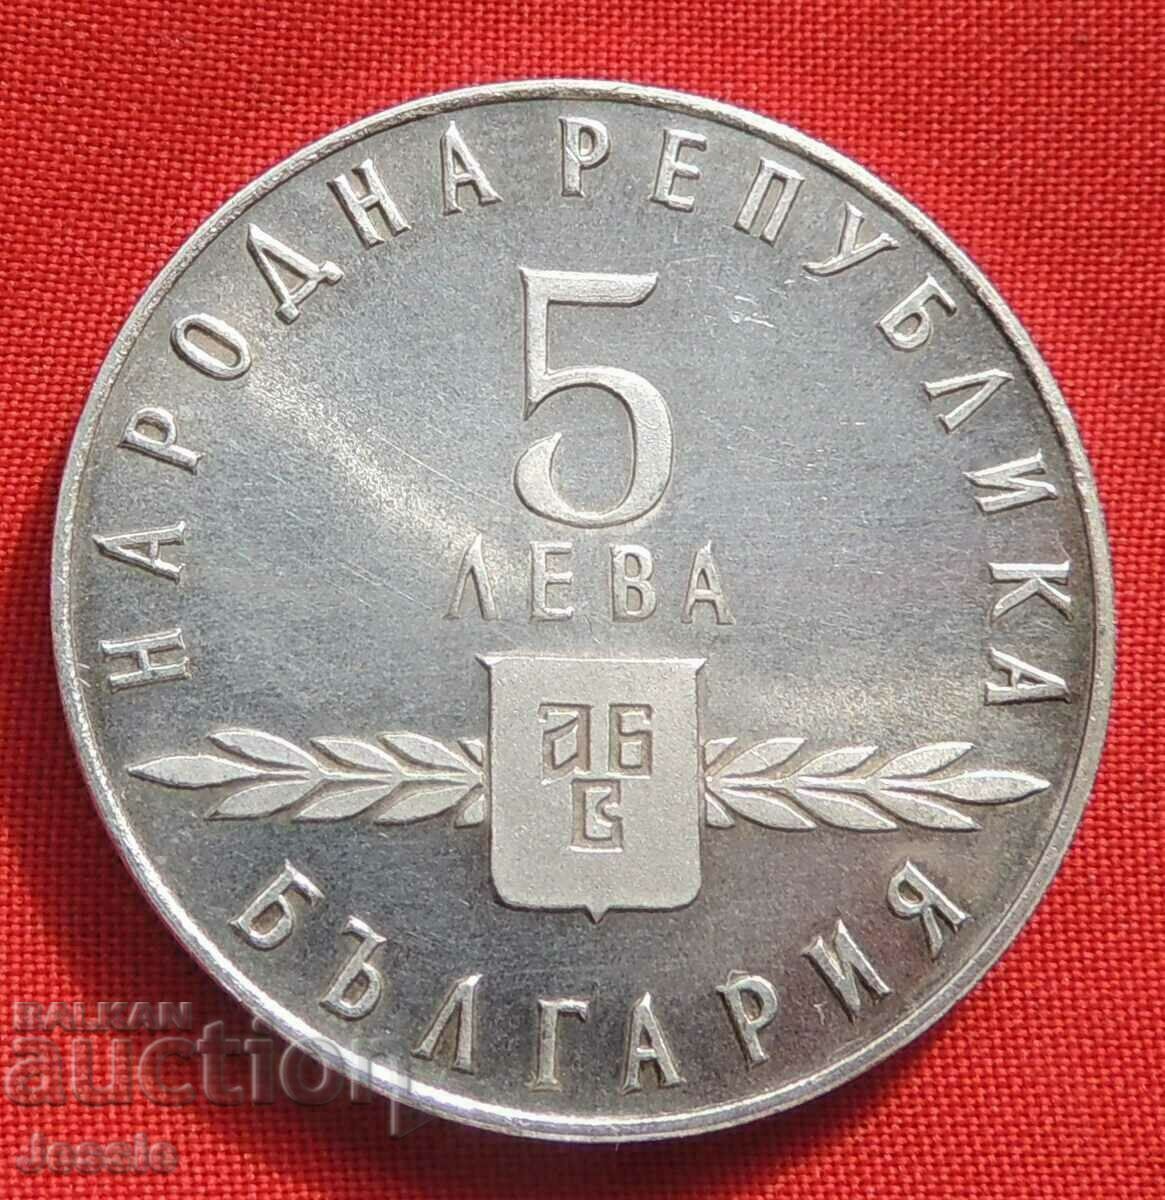 5 BGN 1963 Σλαβική γραφή ΑΠΟΔΕΙΞΗ ΜΕΝΤ